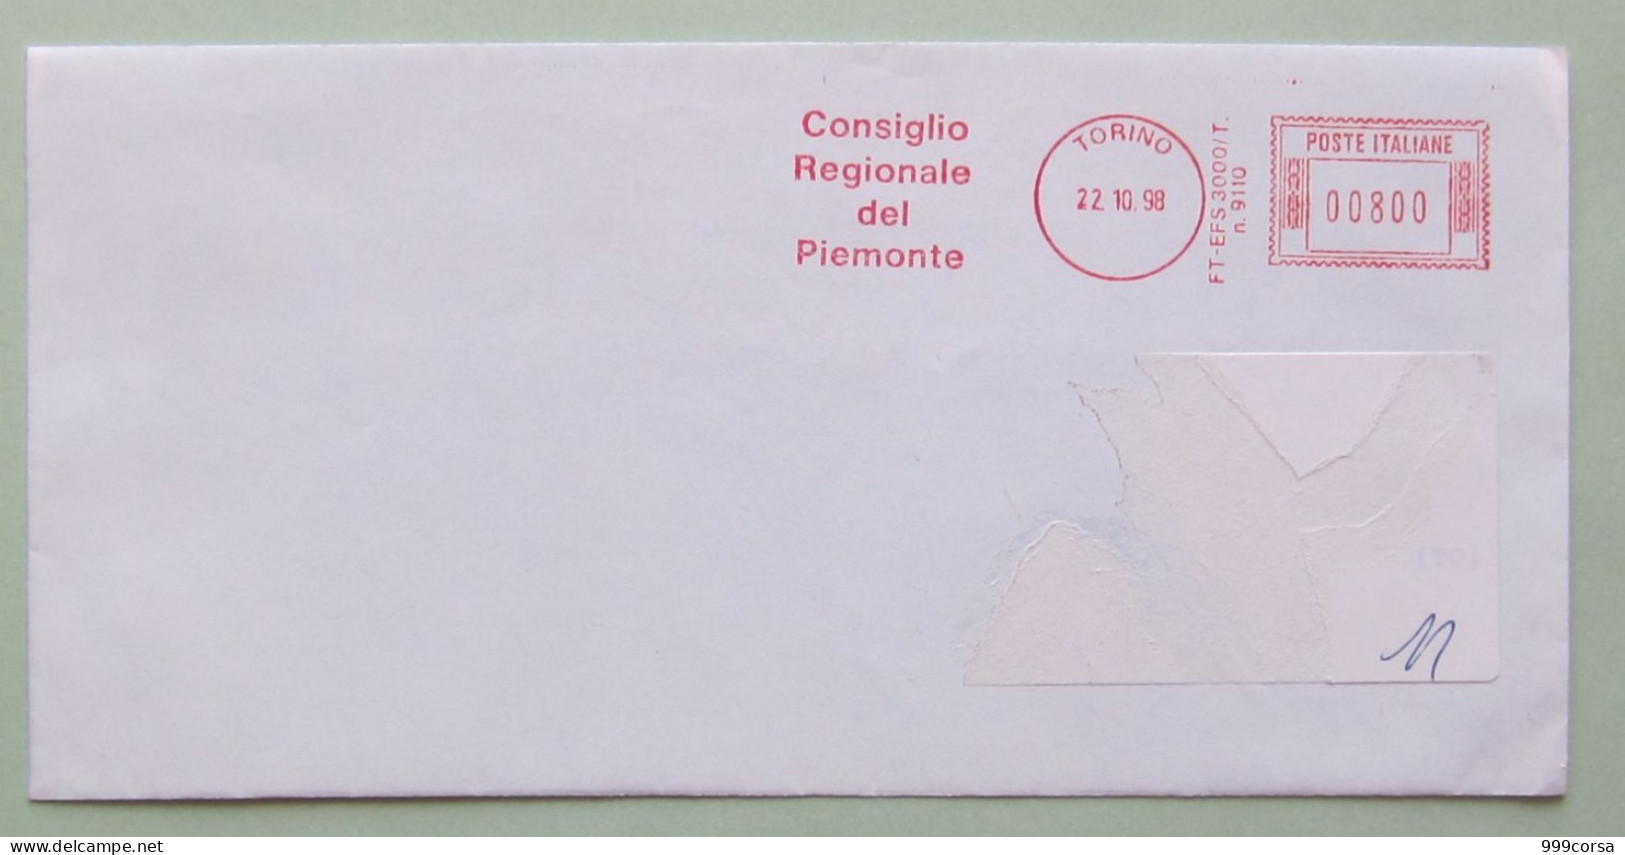 Consiglio Regionale Piemonte, 22-10-98, 800 Lire, Politica, Amministrazione, Partiti, Ema, Meter, Freistempel - Macchine Per Obliterare (EMA)